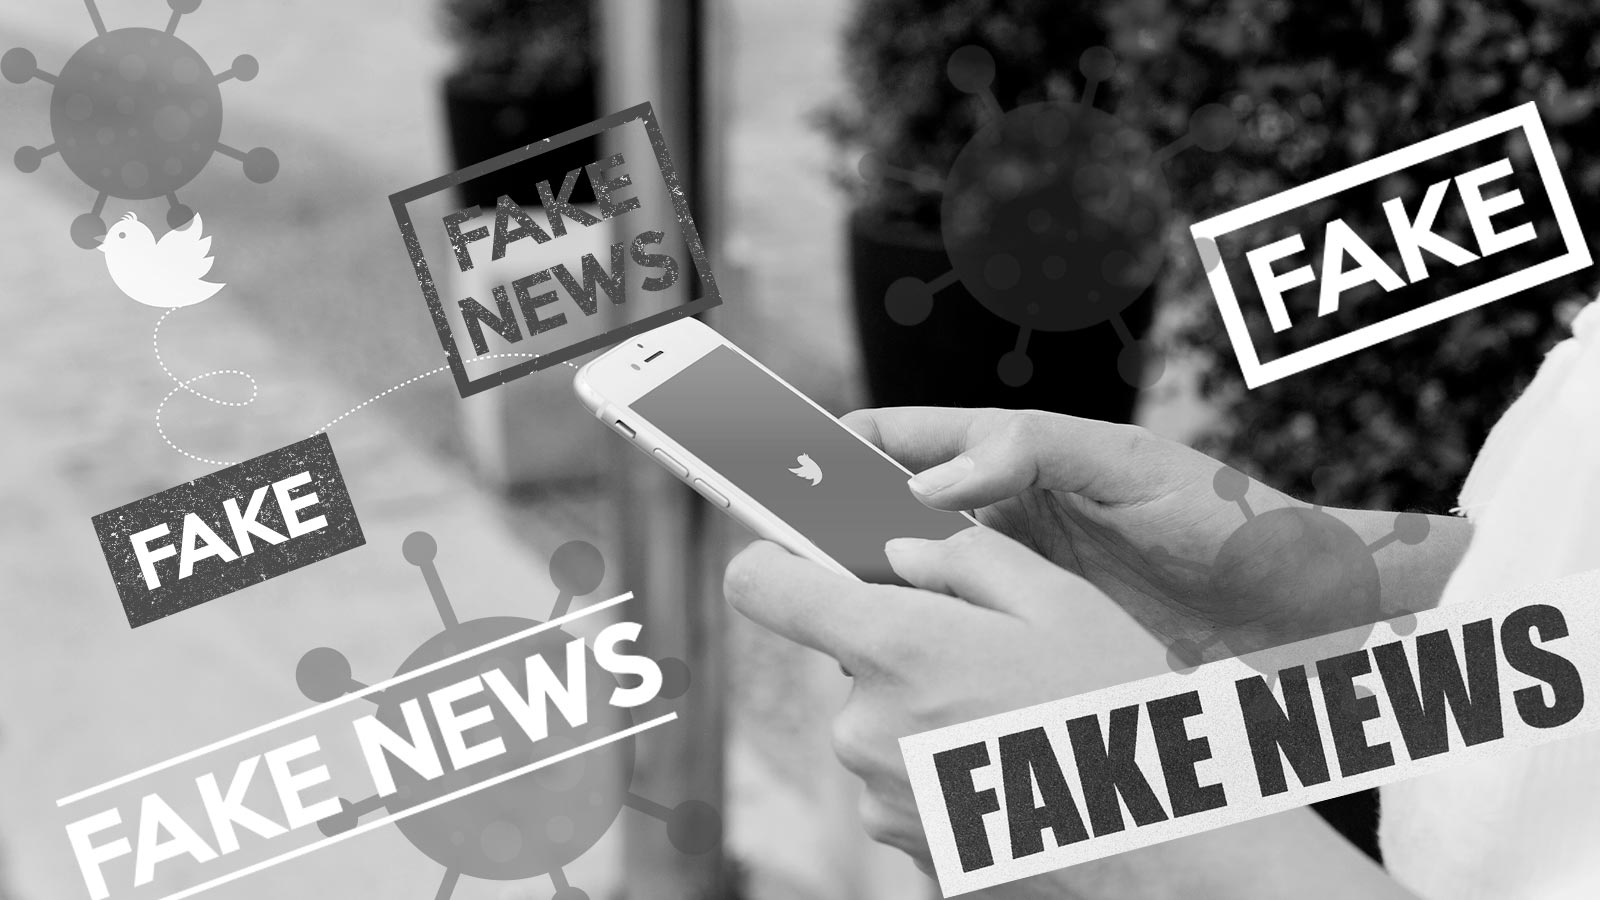 Twitter permite denunciar fake news de covid e política em teste - TecMundo